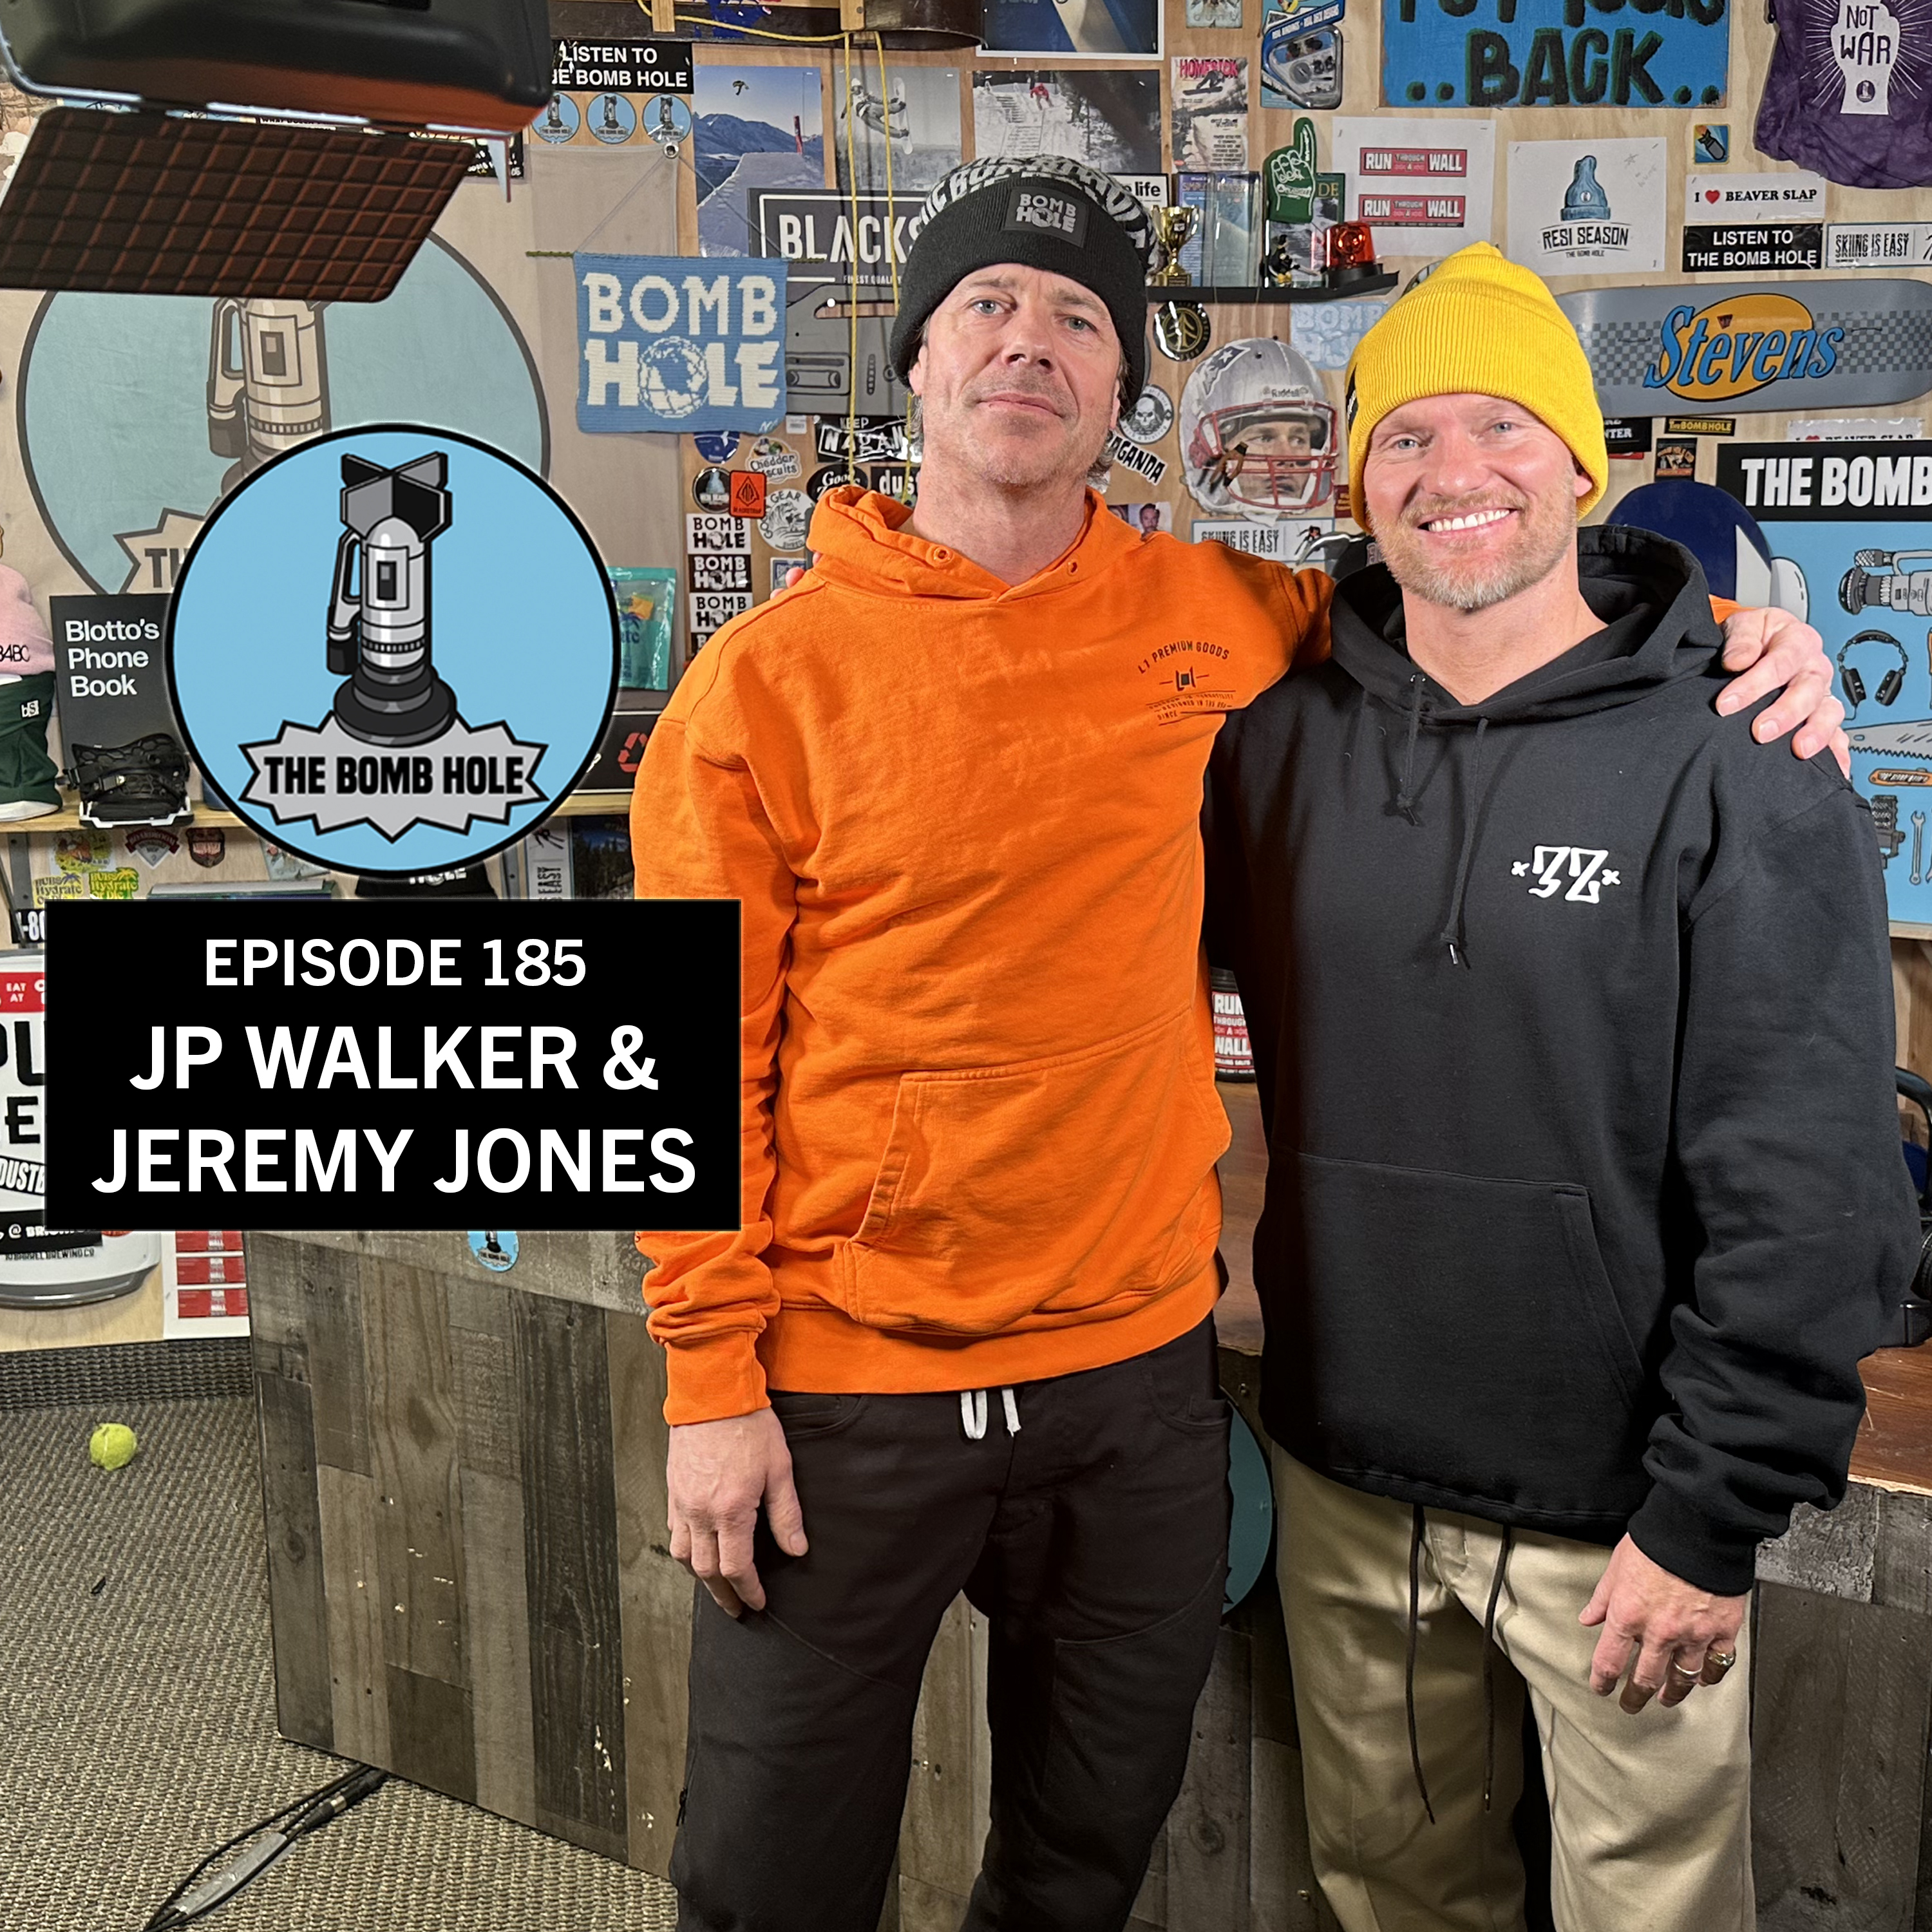 JP Walker & Jeremy Jones: The Bomb Hole Episode 185